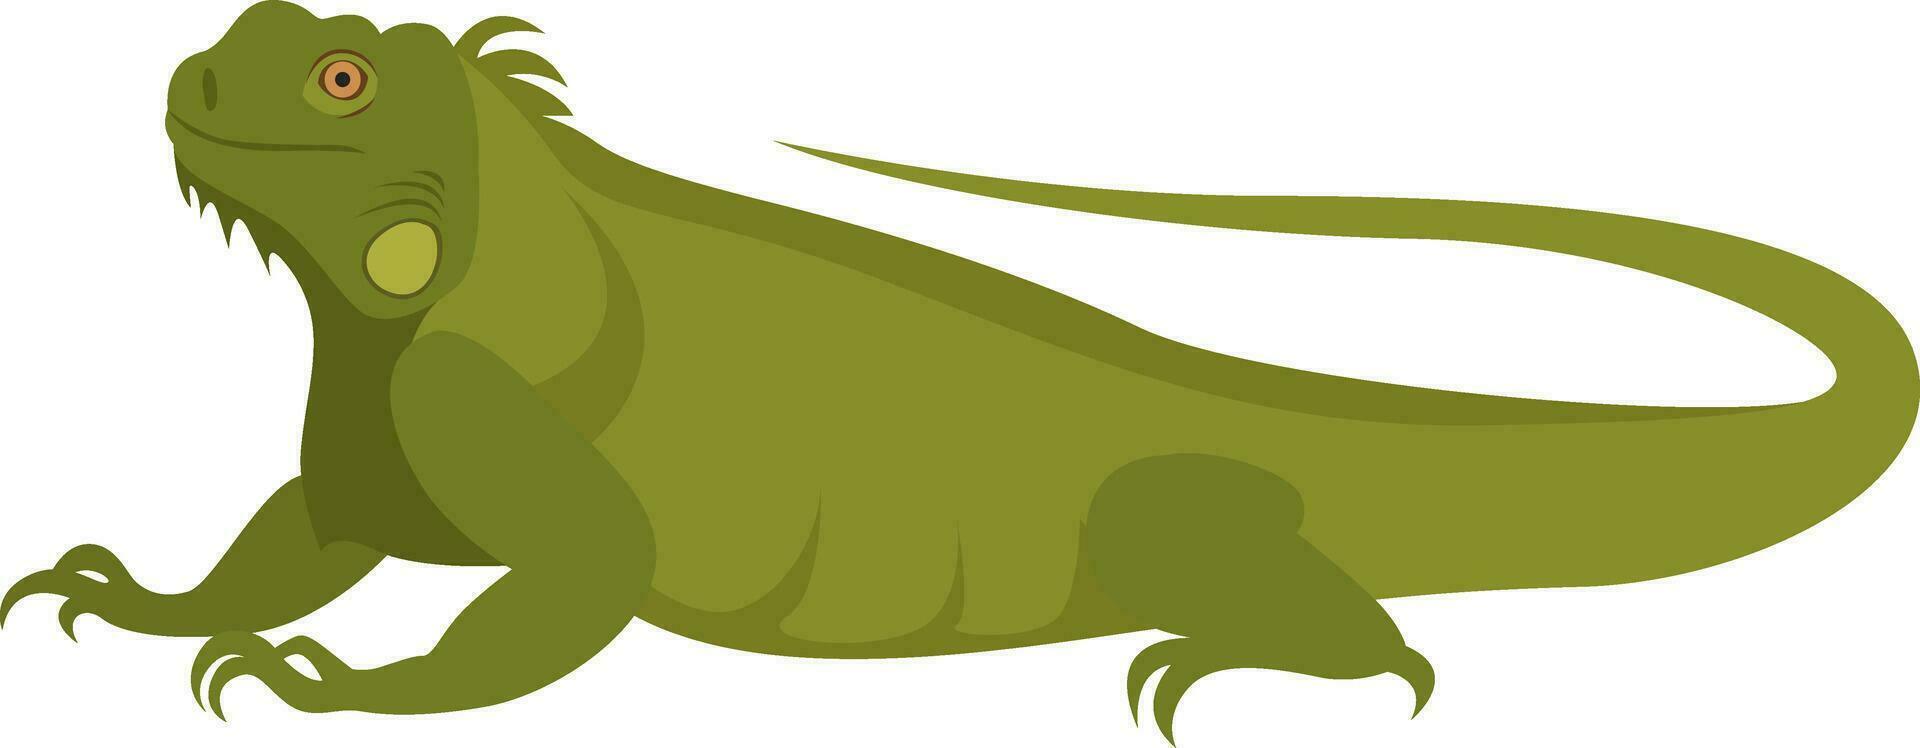 verde iguana, ilustração, vetor em branco fundo